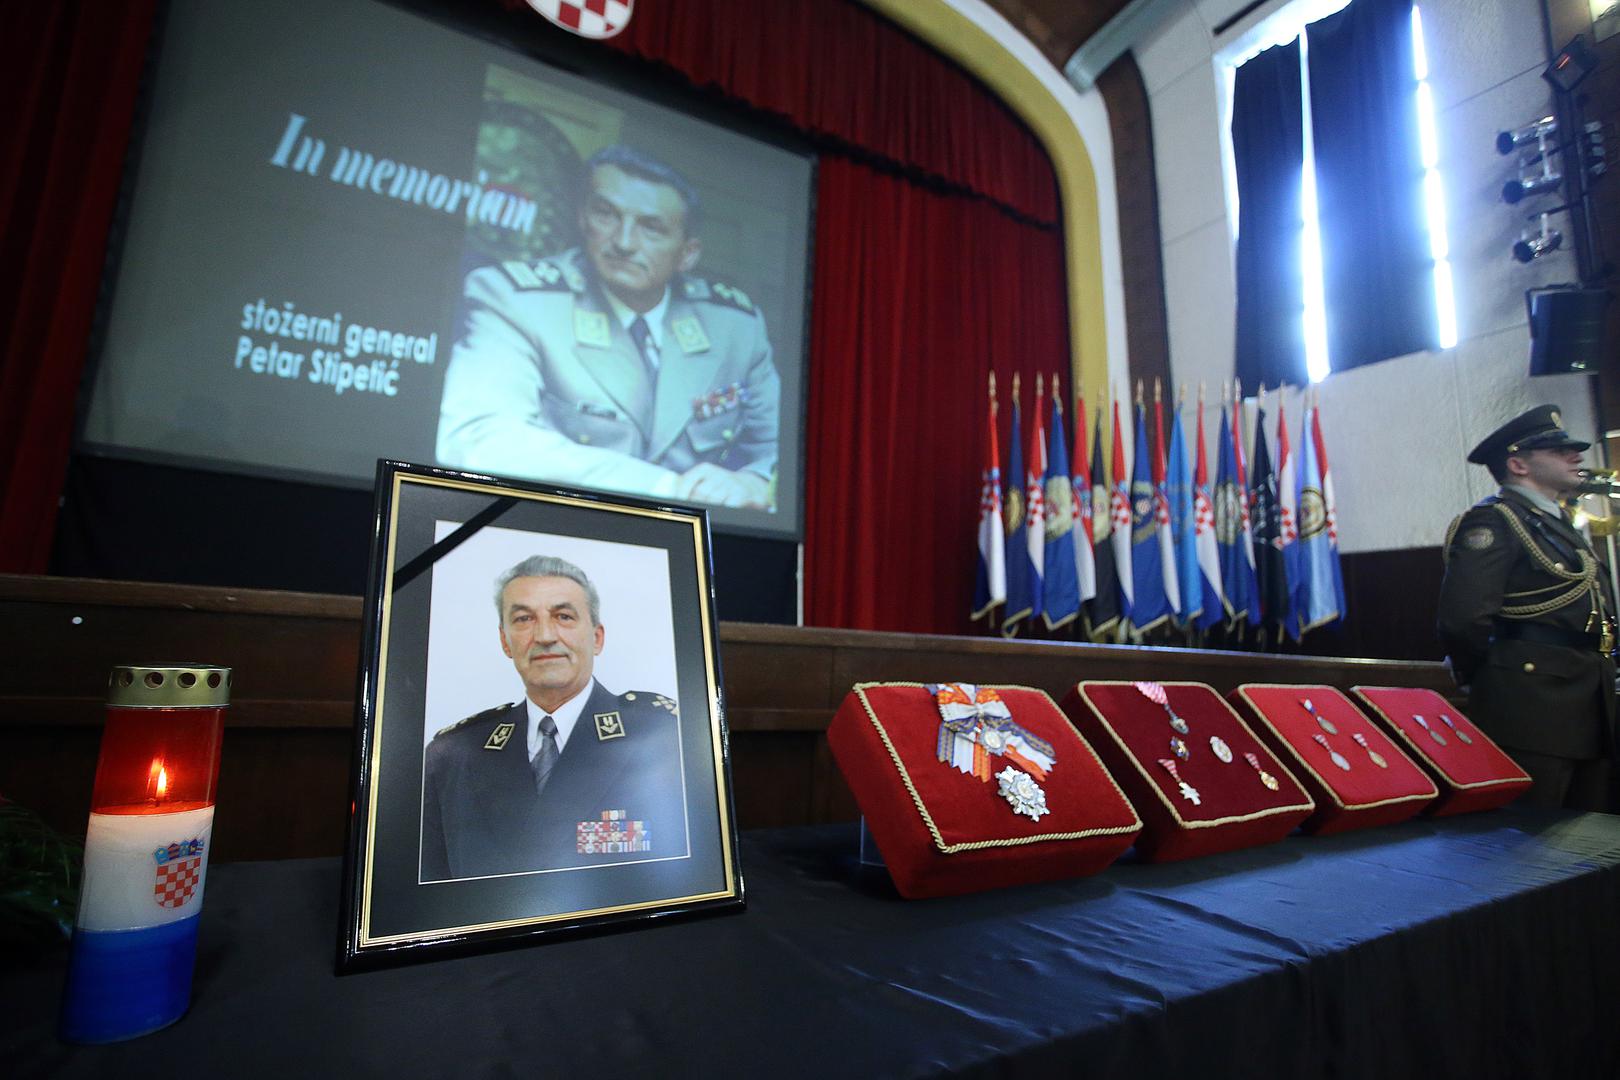 Komemoracija za generala Petra Stipetića održana je u Domu Hrvatske vojske 'Zvonimir'. 